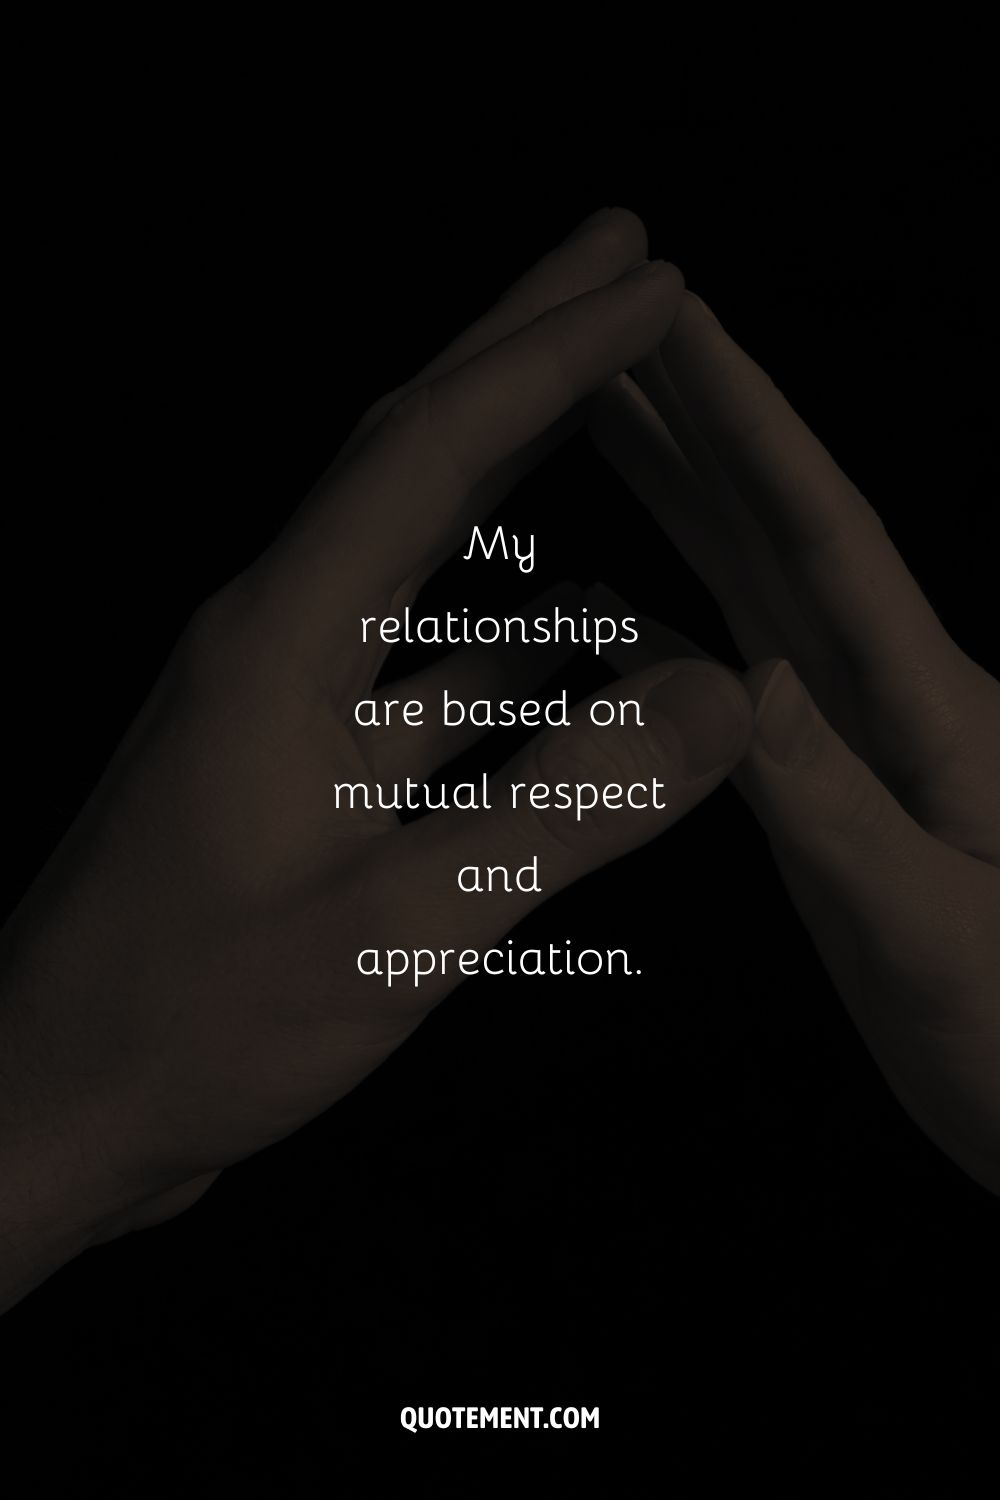 fotografía oscura de dos manos que representan una afirmación para las relaciones